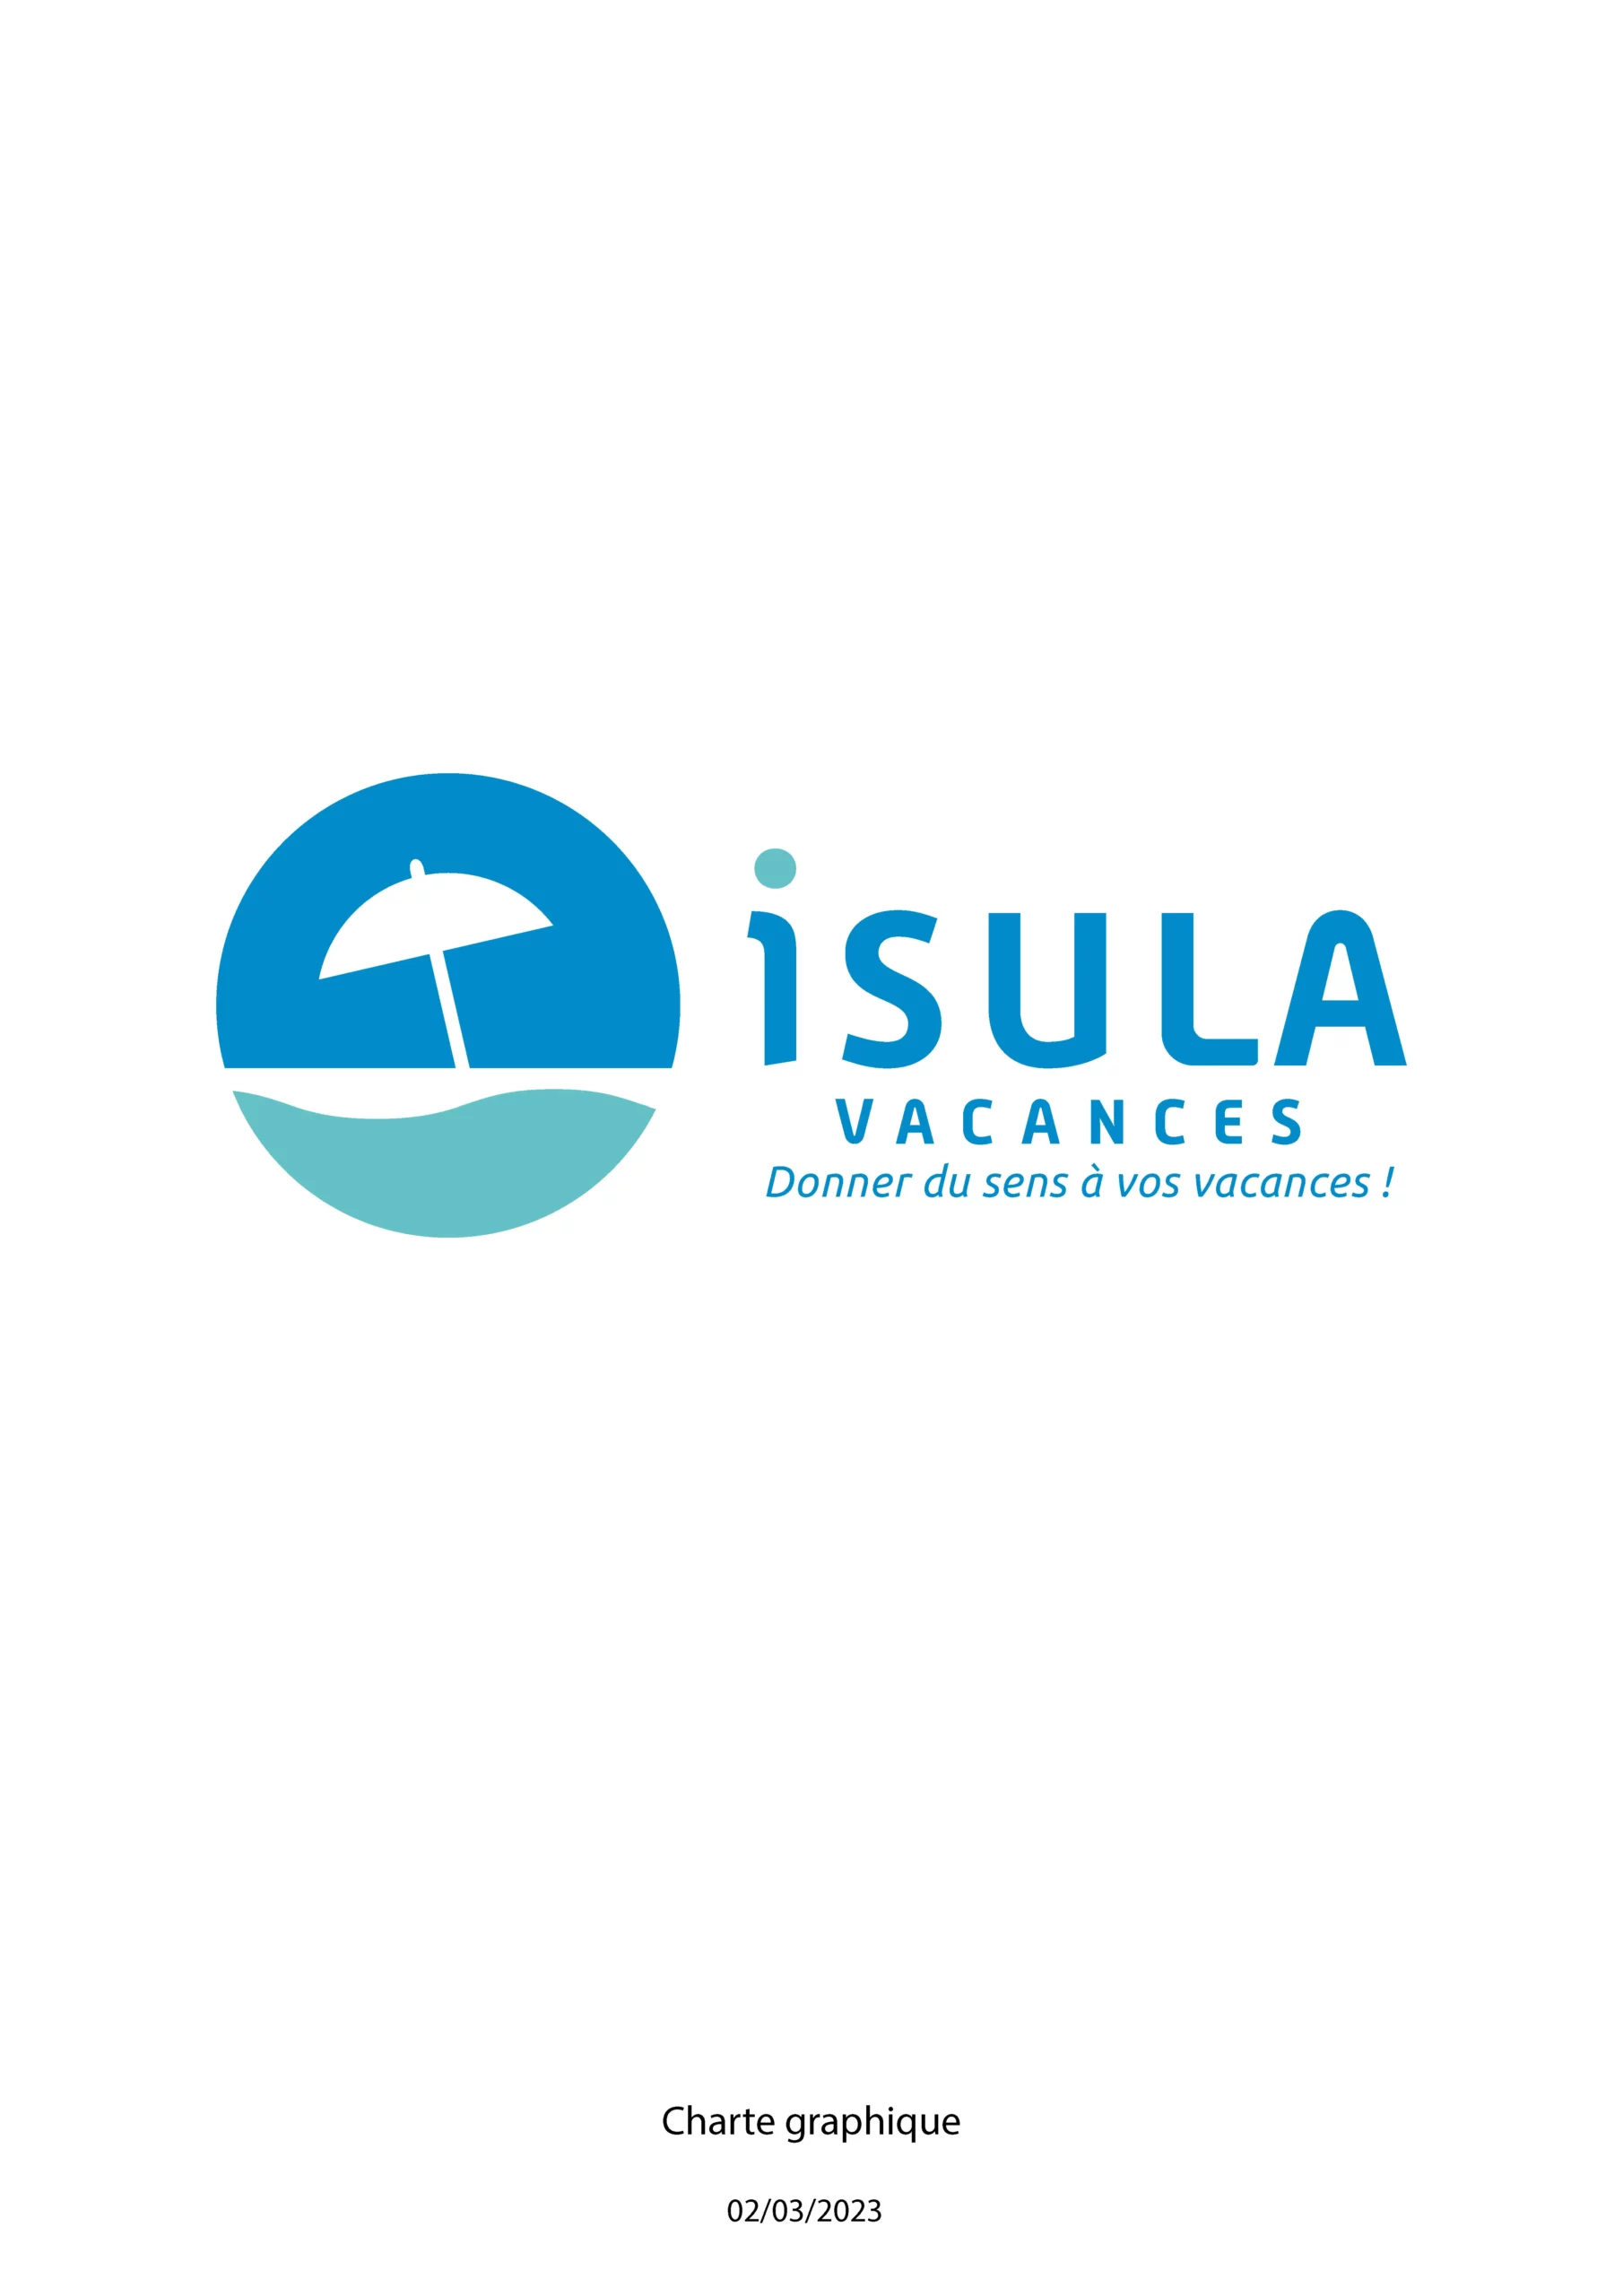 Charte graphique simplifiée du logo Isula Vacances